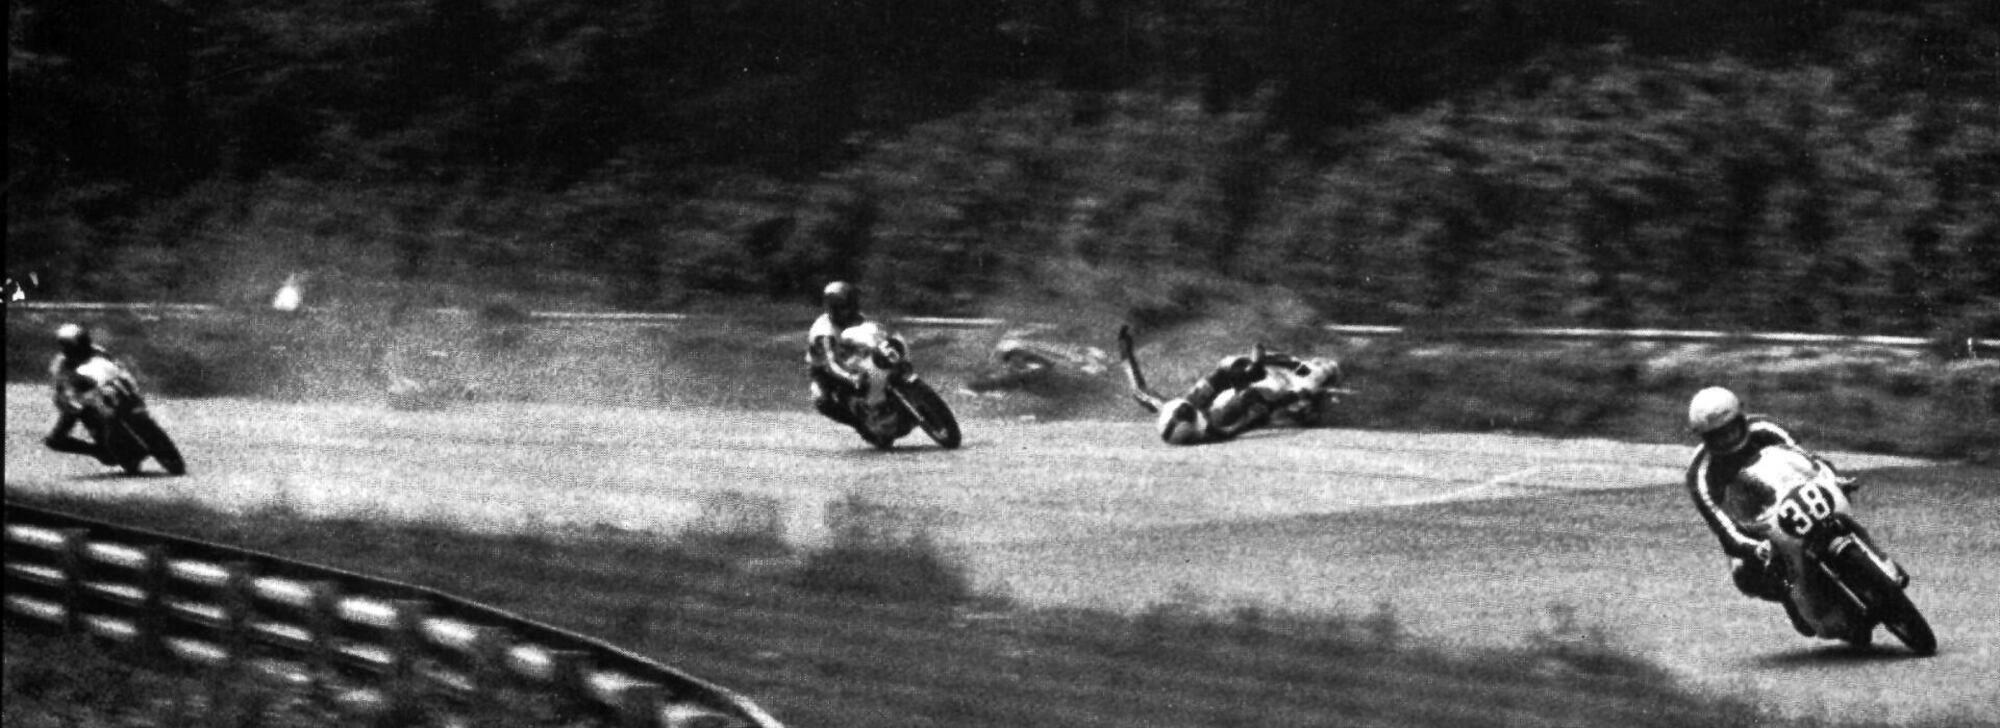 Pasolini Saarinen incidente Monza